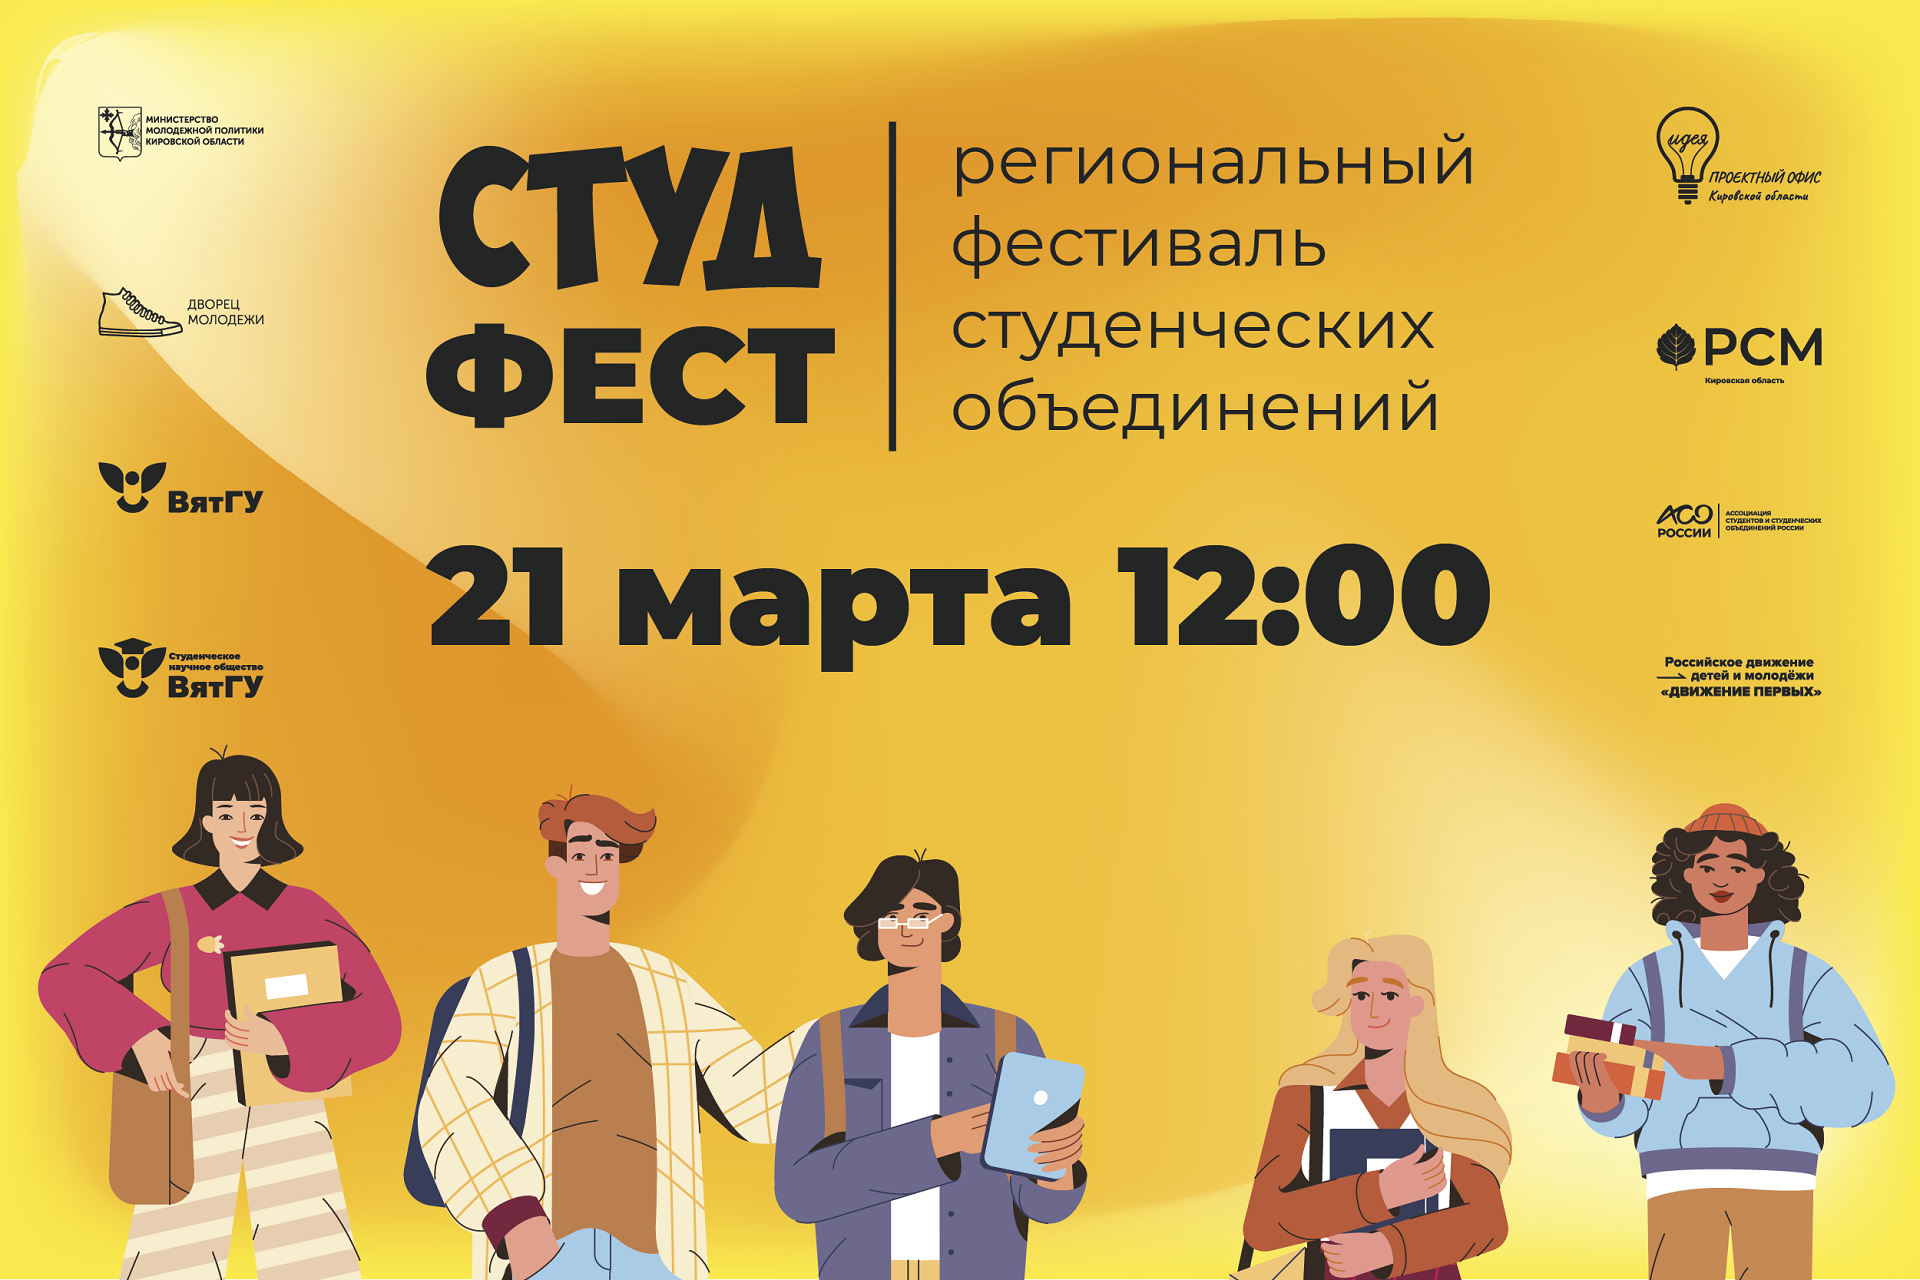 ВятГУ стал площадкой регионального фестиваля студенческих объединений «Студ Фест»